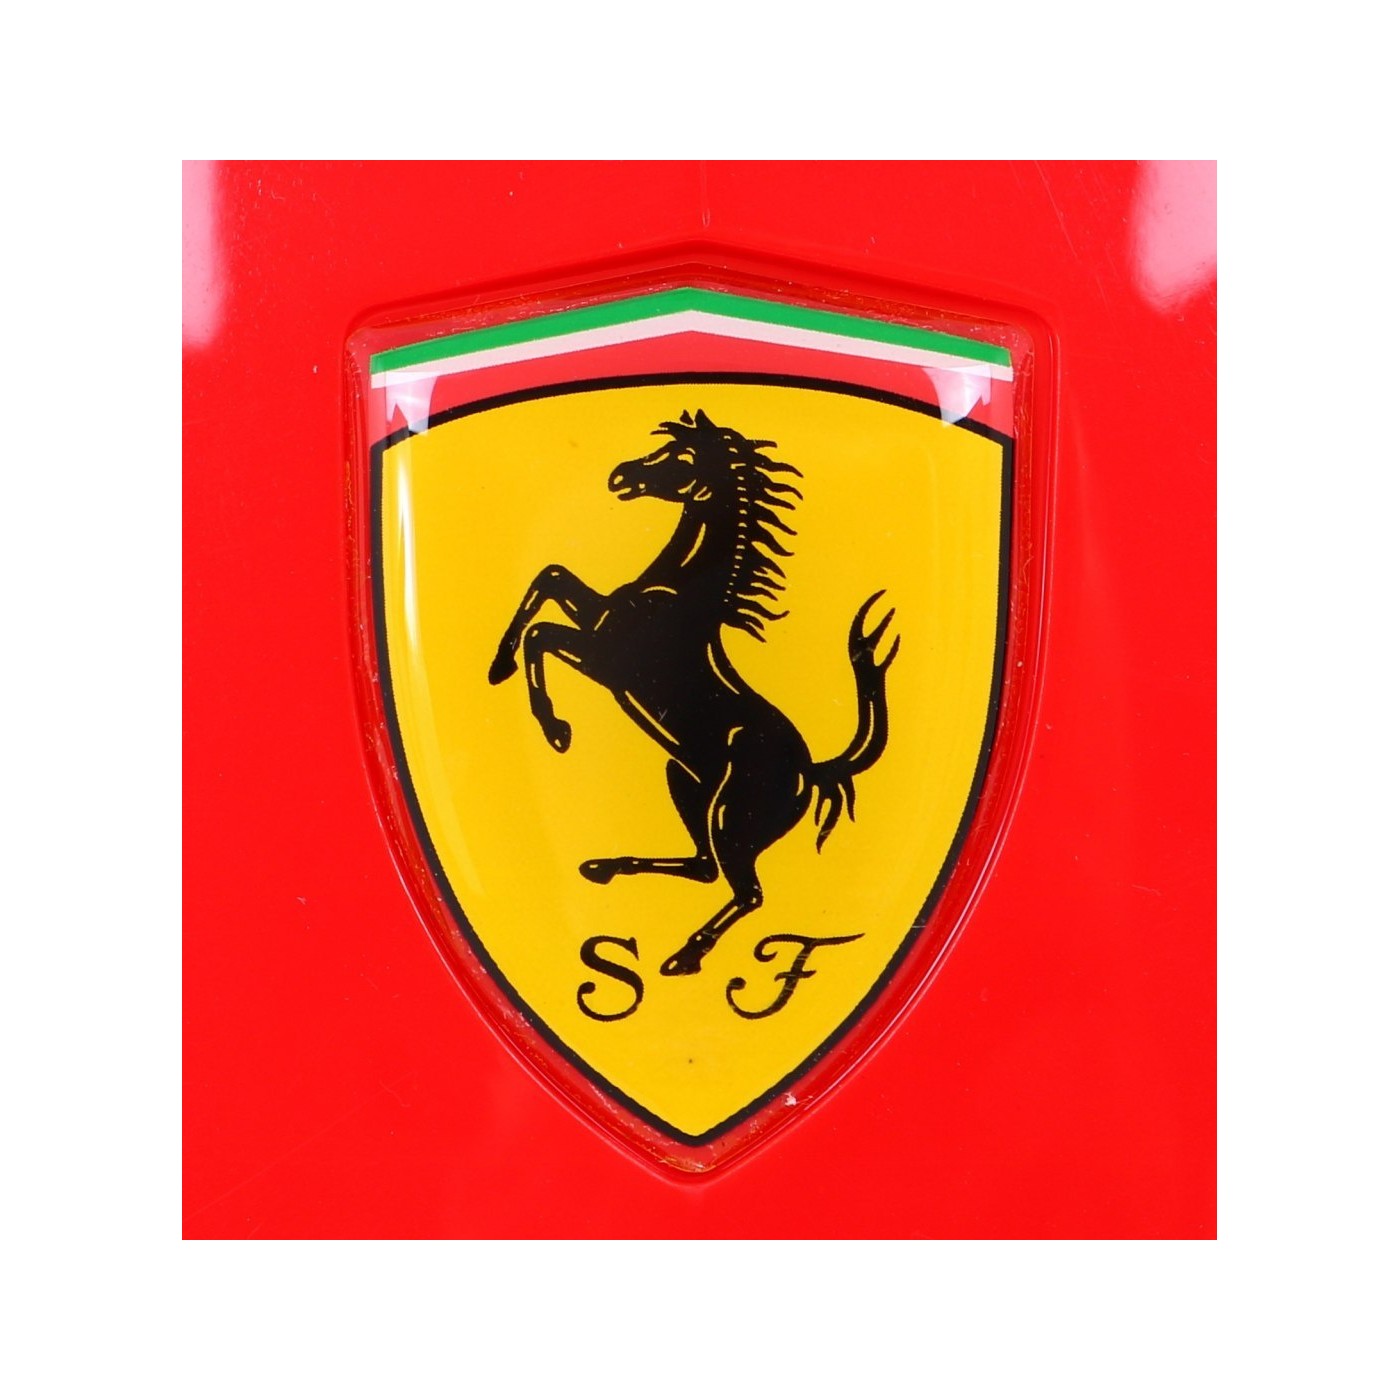 Gokart Ferrari red